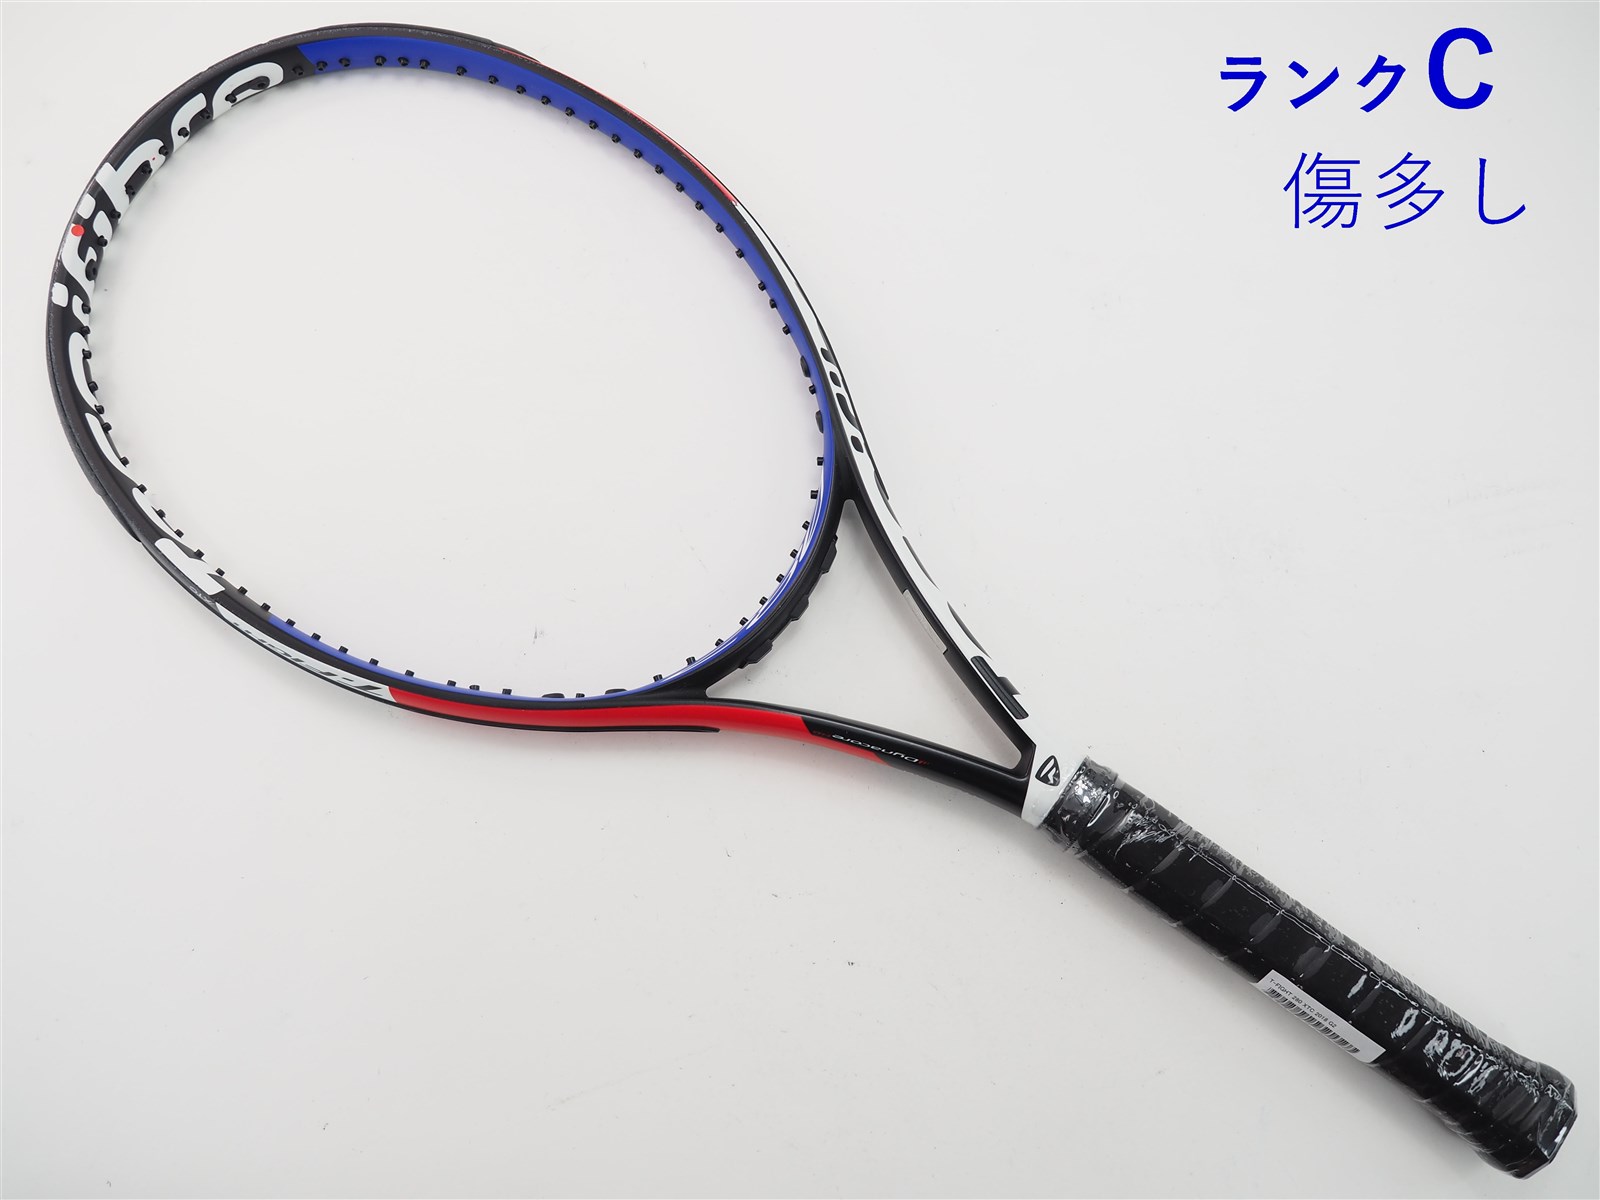 テニスラケット テクニファイバー ティーファイト 300 XTC 2018年